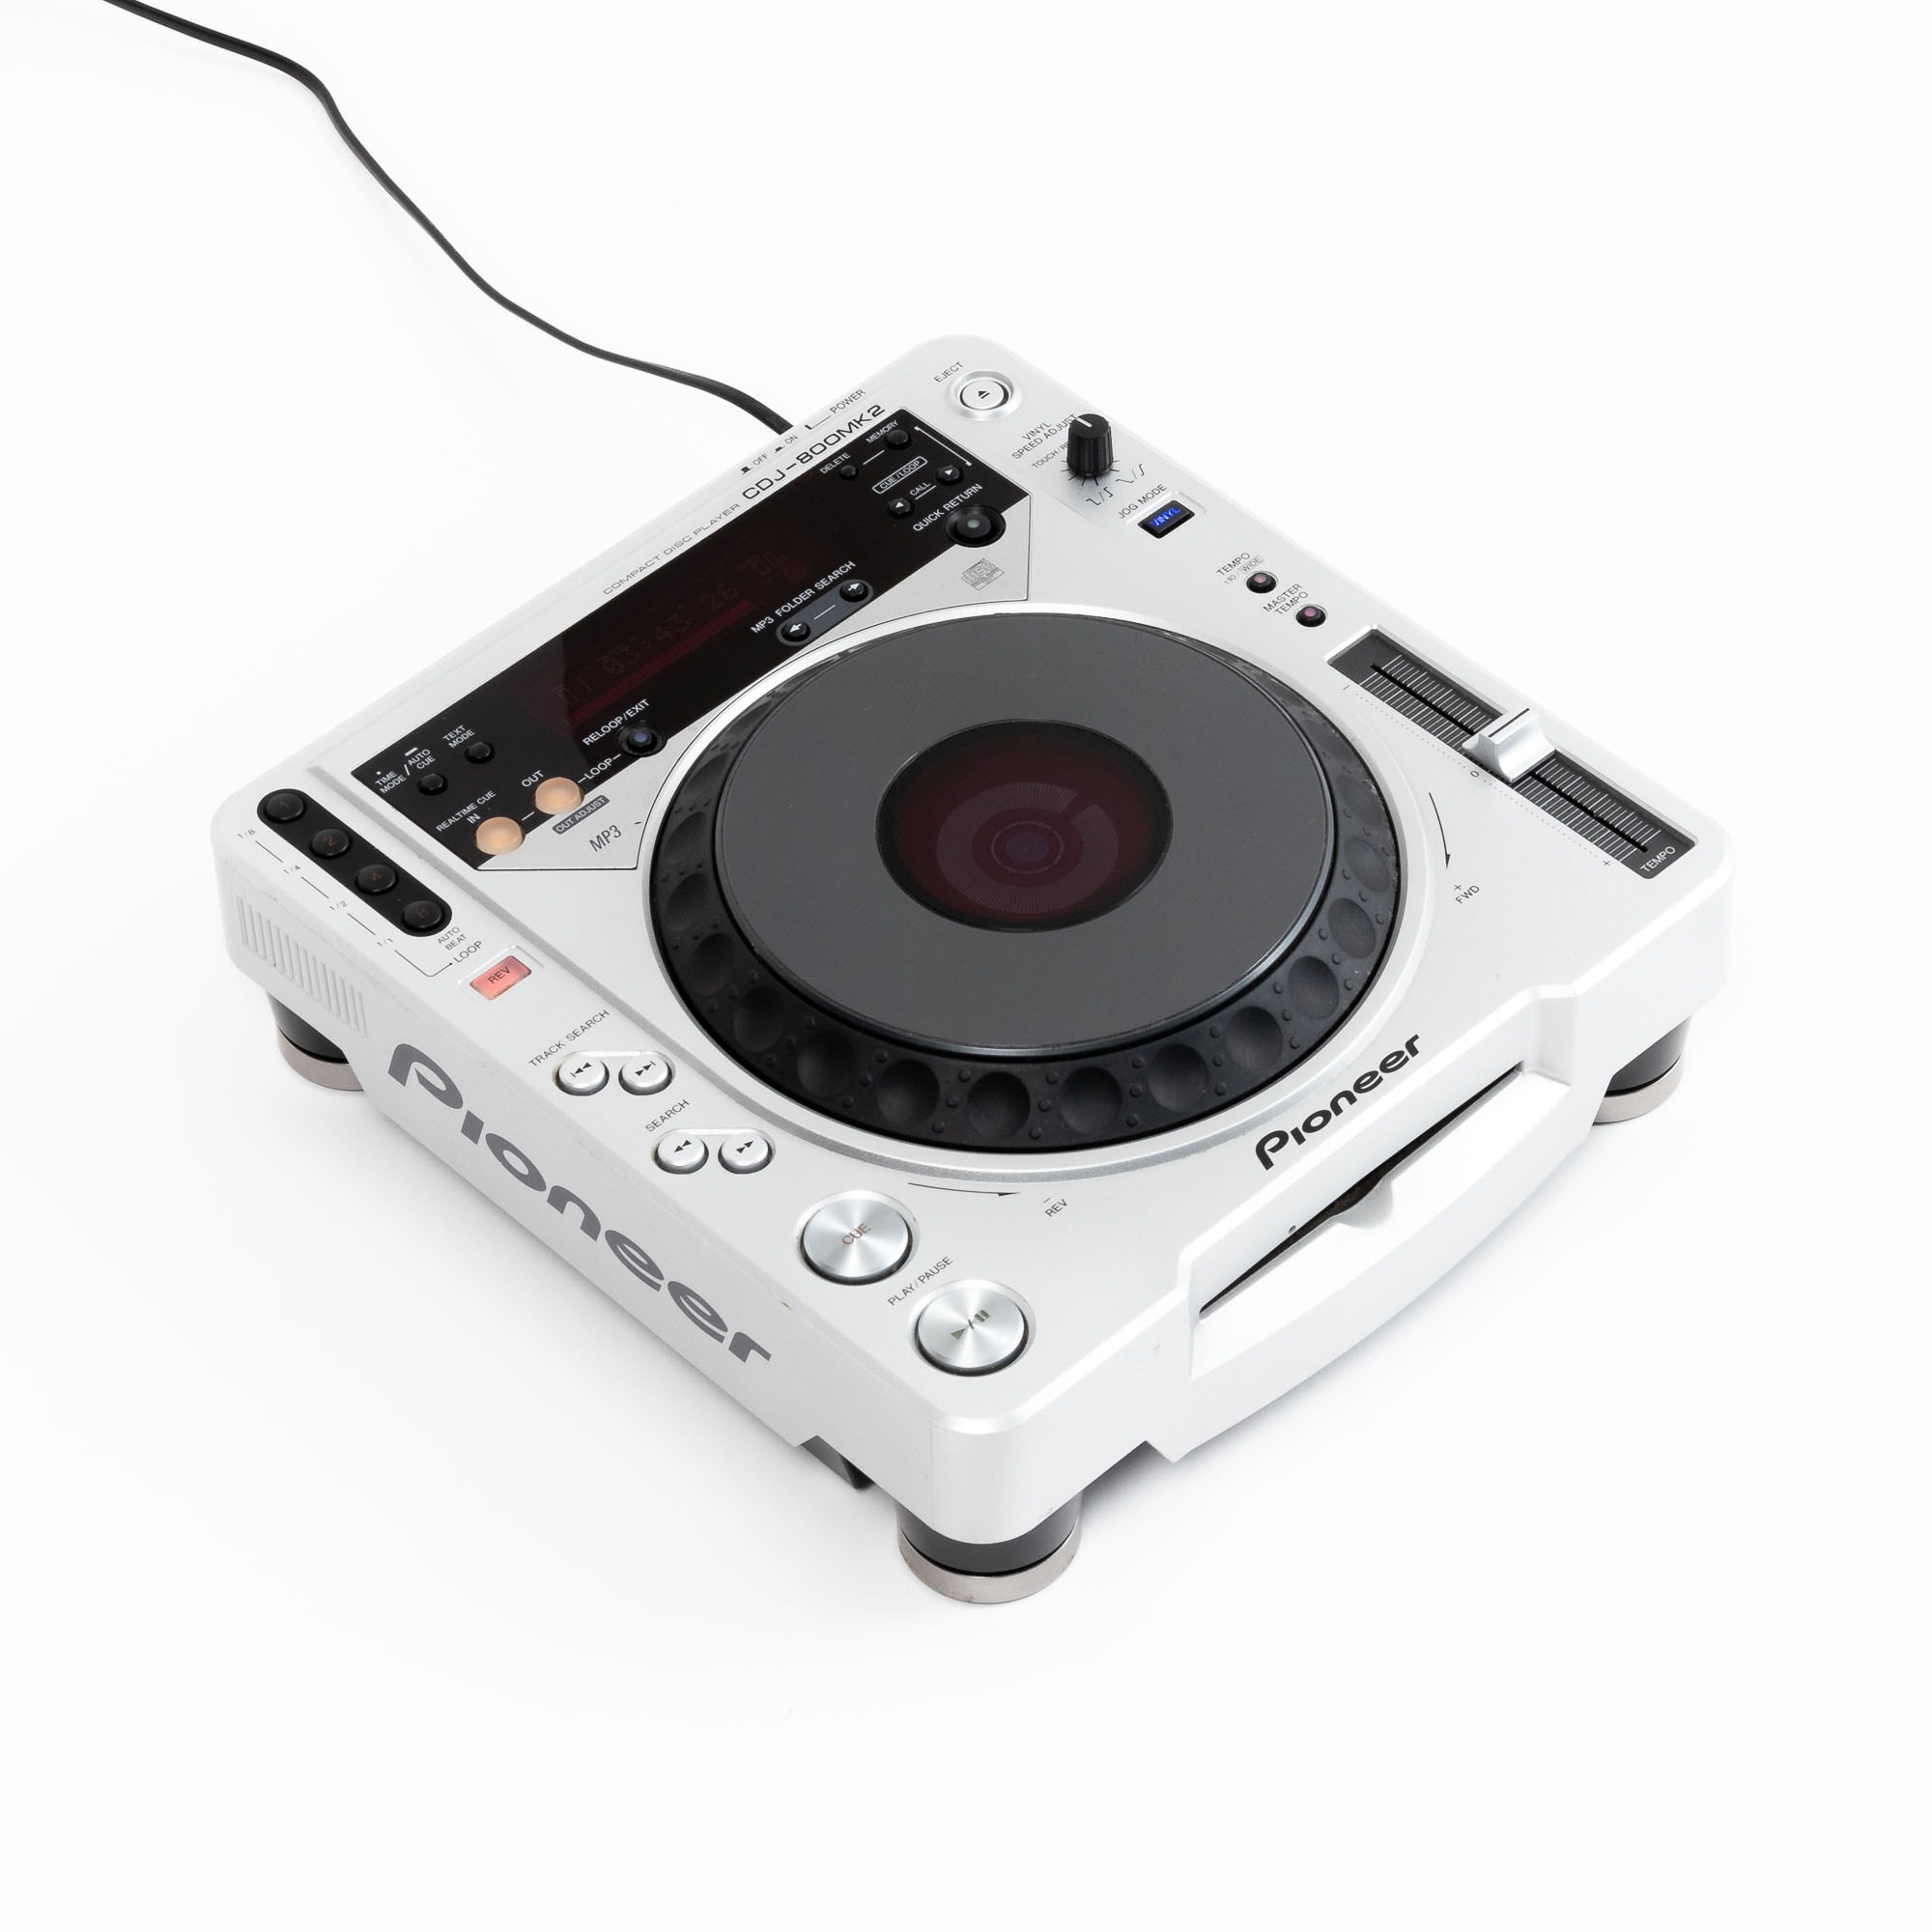 パイオニア CDJ-800MK2 Compact CD Player - DJ機器